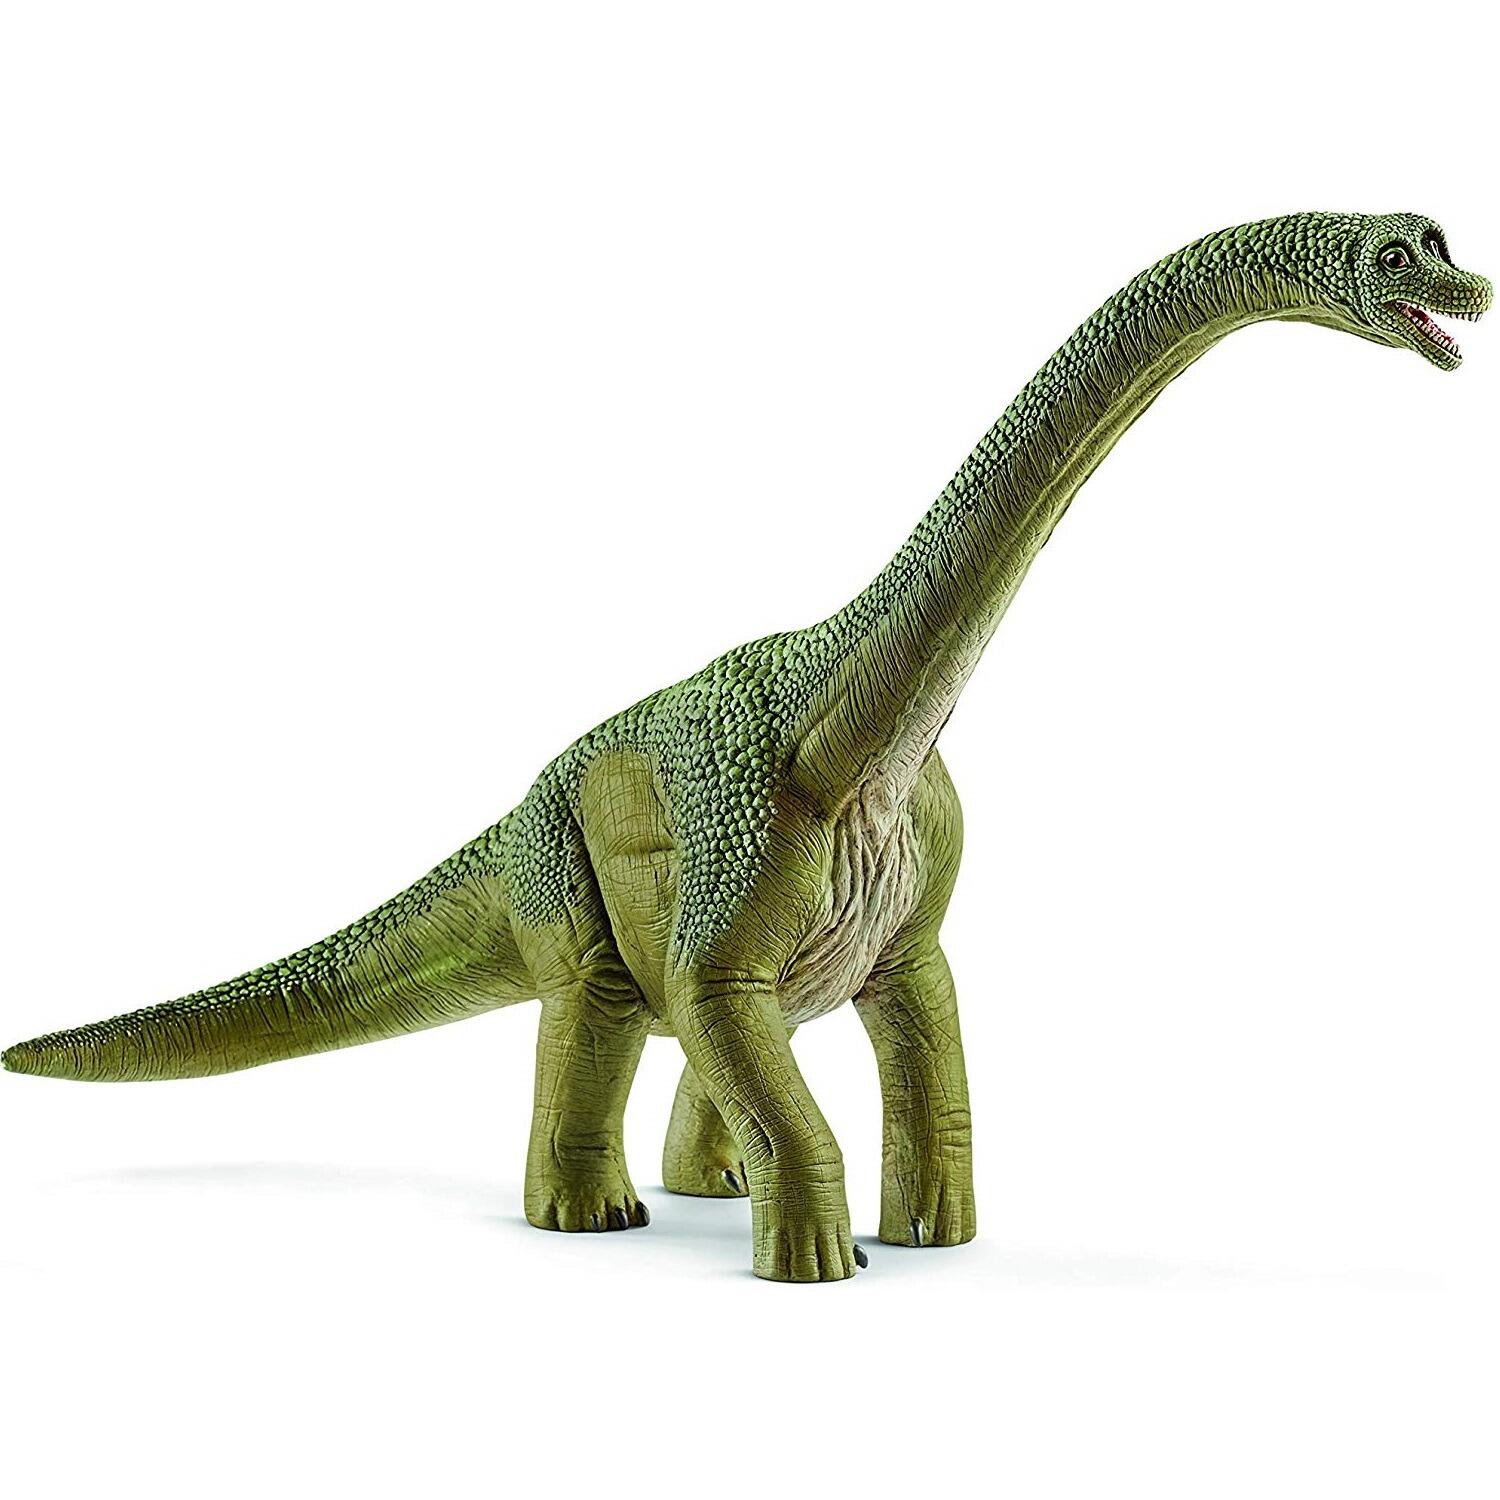 Schleich Dinosaurs Brachiosaurus 14581 Figure